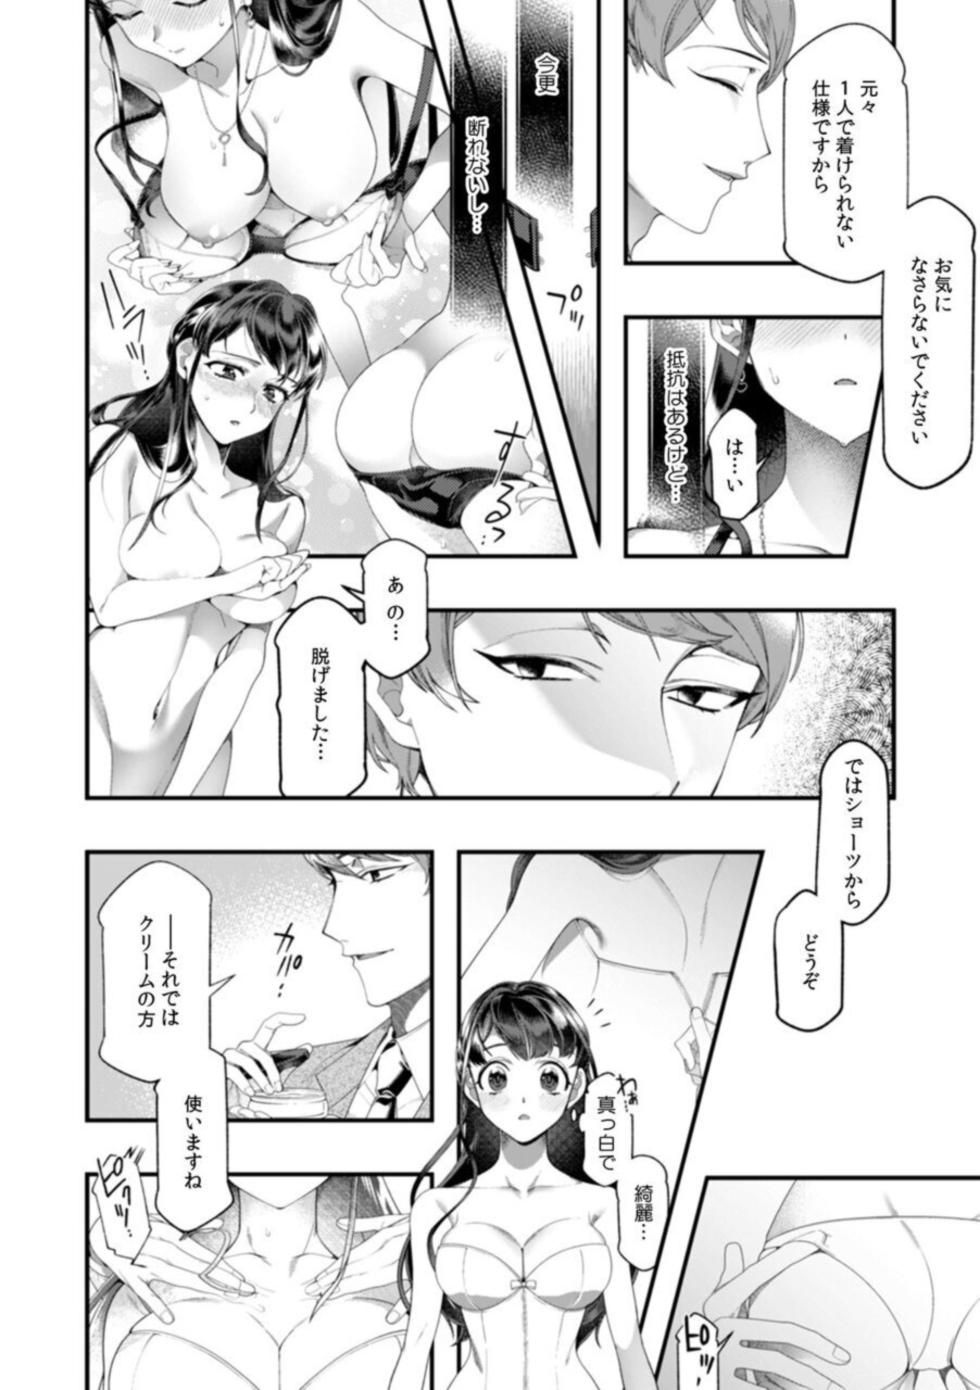 [Nichi Ryū / Hikaru] "Dame, Sore Ijō Fukaku Sōnyūrenaide!" Kekkonshikijō de Otto no Yūjin to fu dōi SEX 1 - Page 16